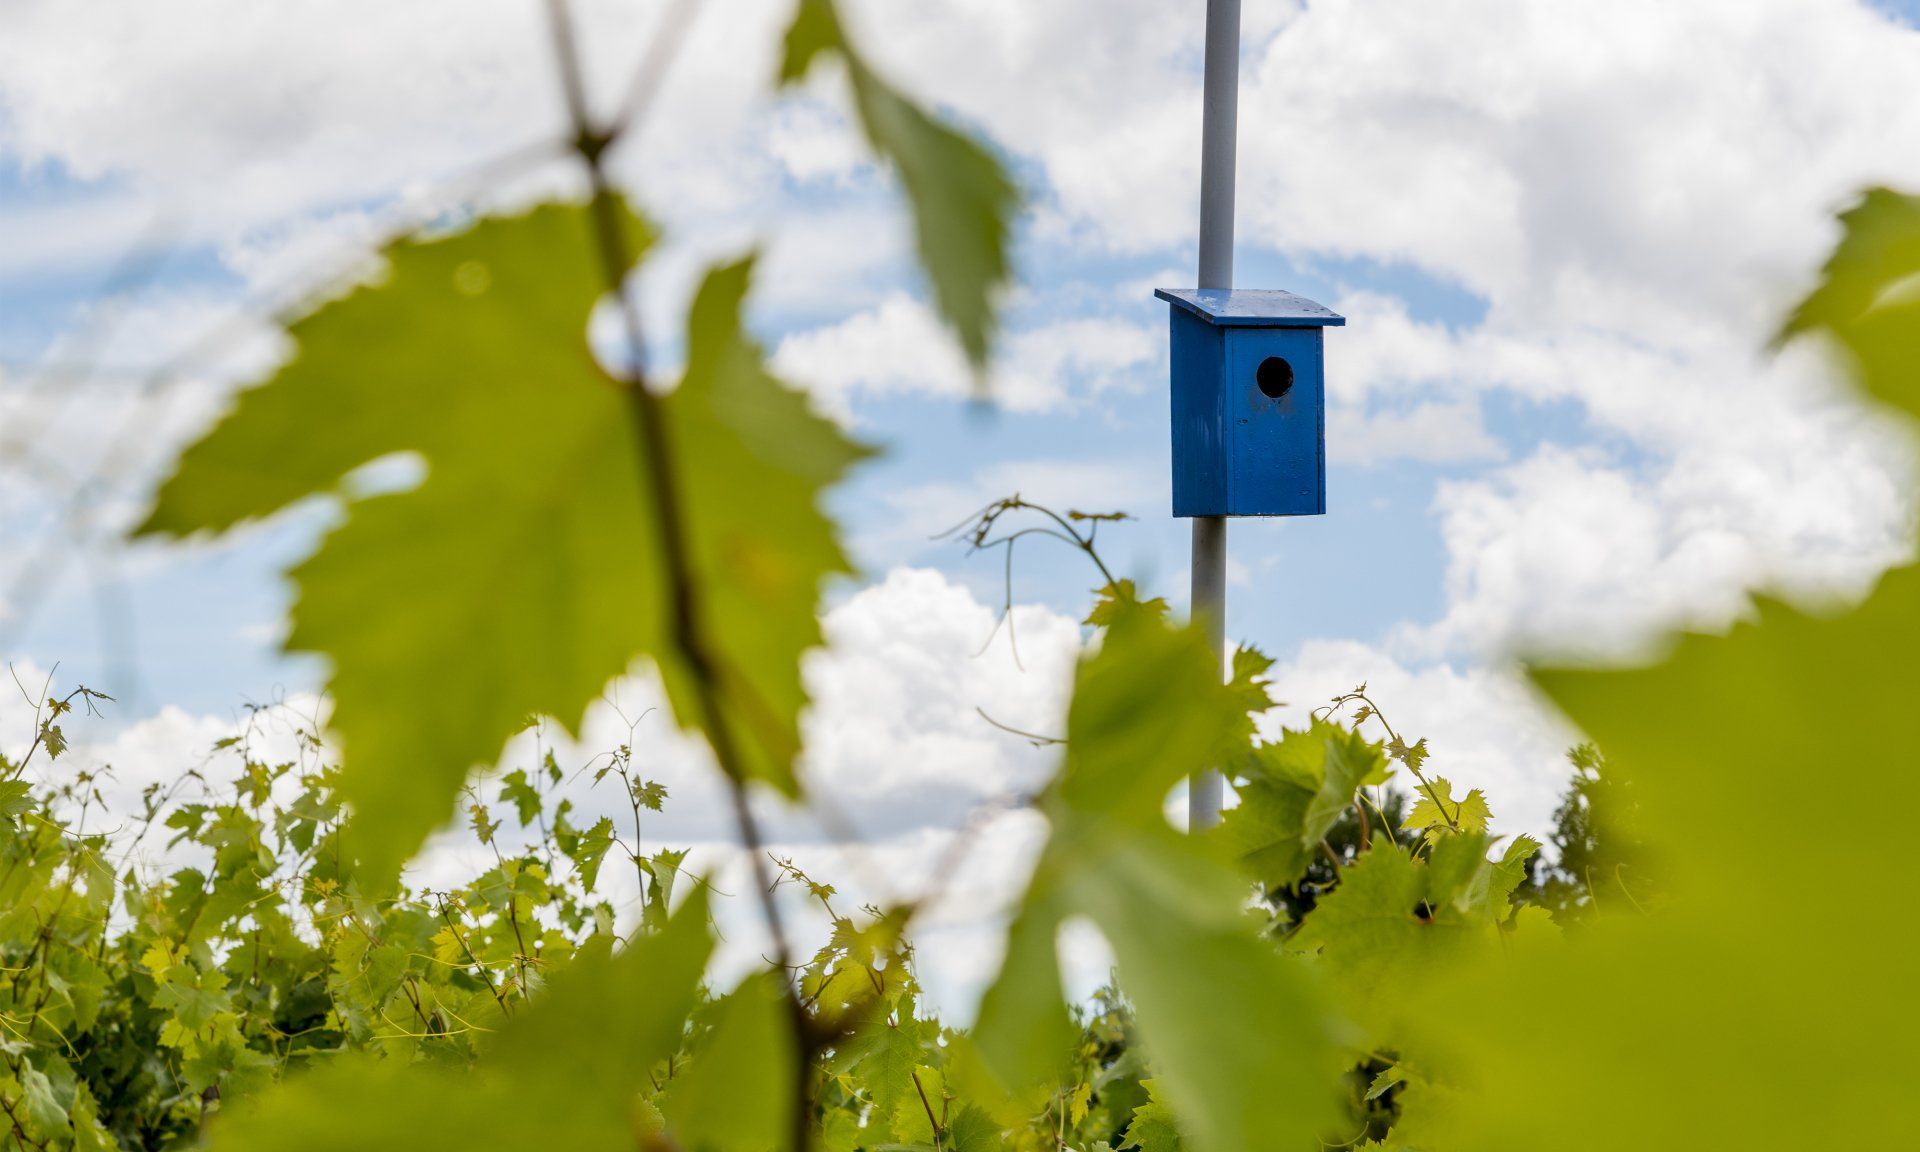 Bird feeders are found throughout the Vine Cliff vineyards